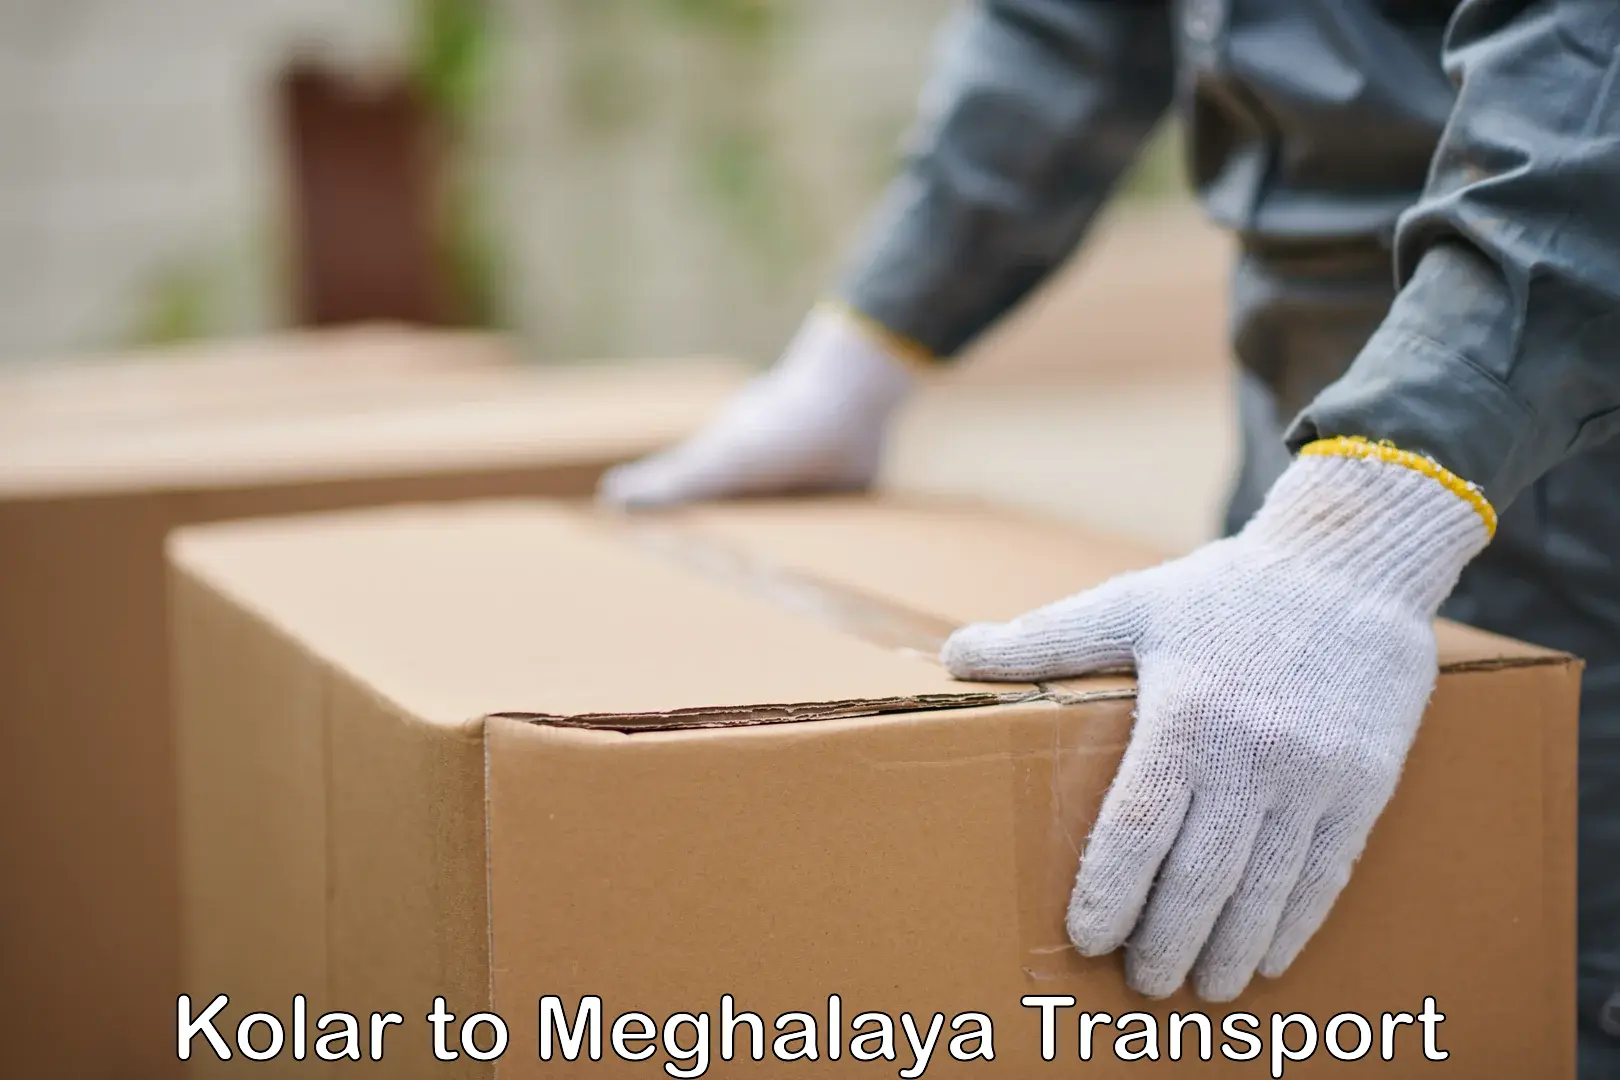 Commercial transport service Kolar to NIT Meghalaya